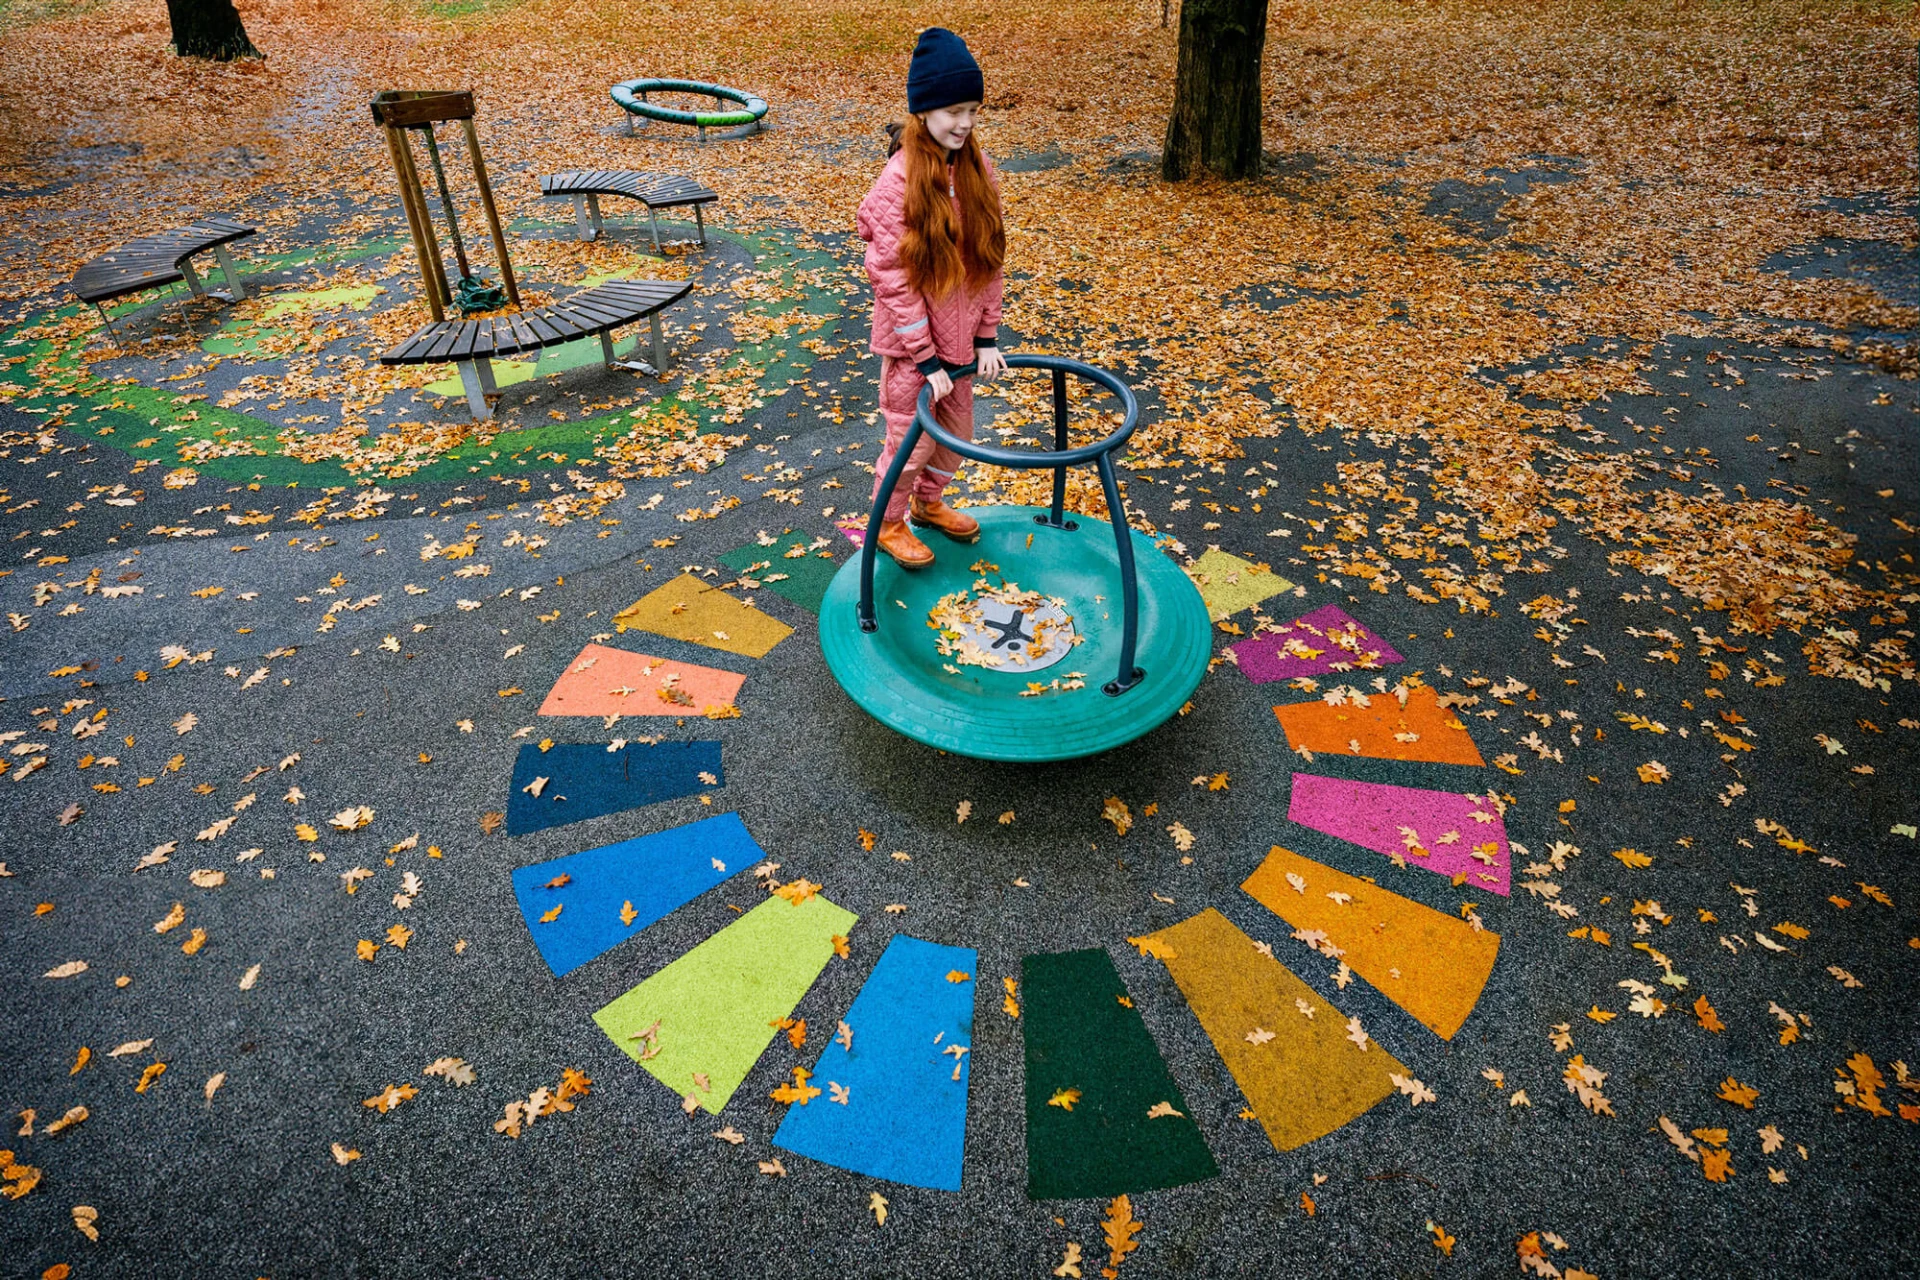 dívka hrající si na dětském hřišti s barevným povrchem